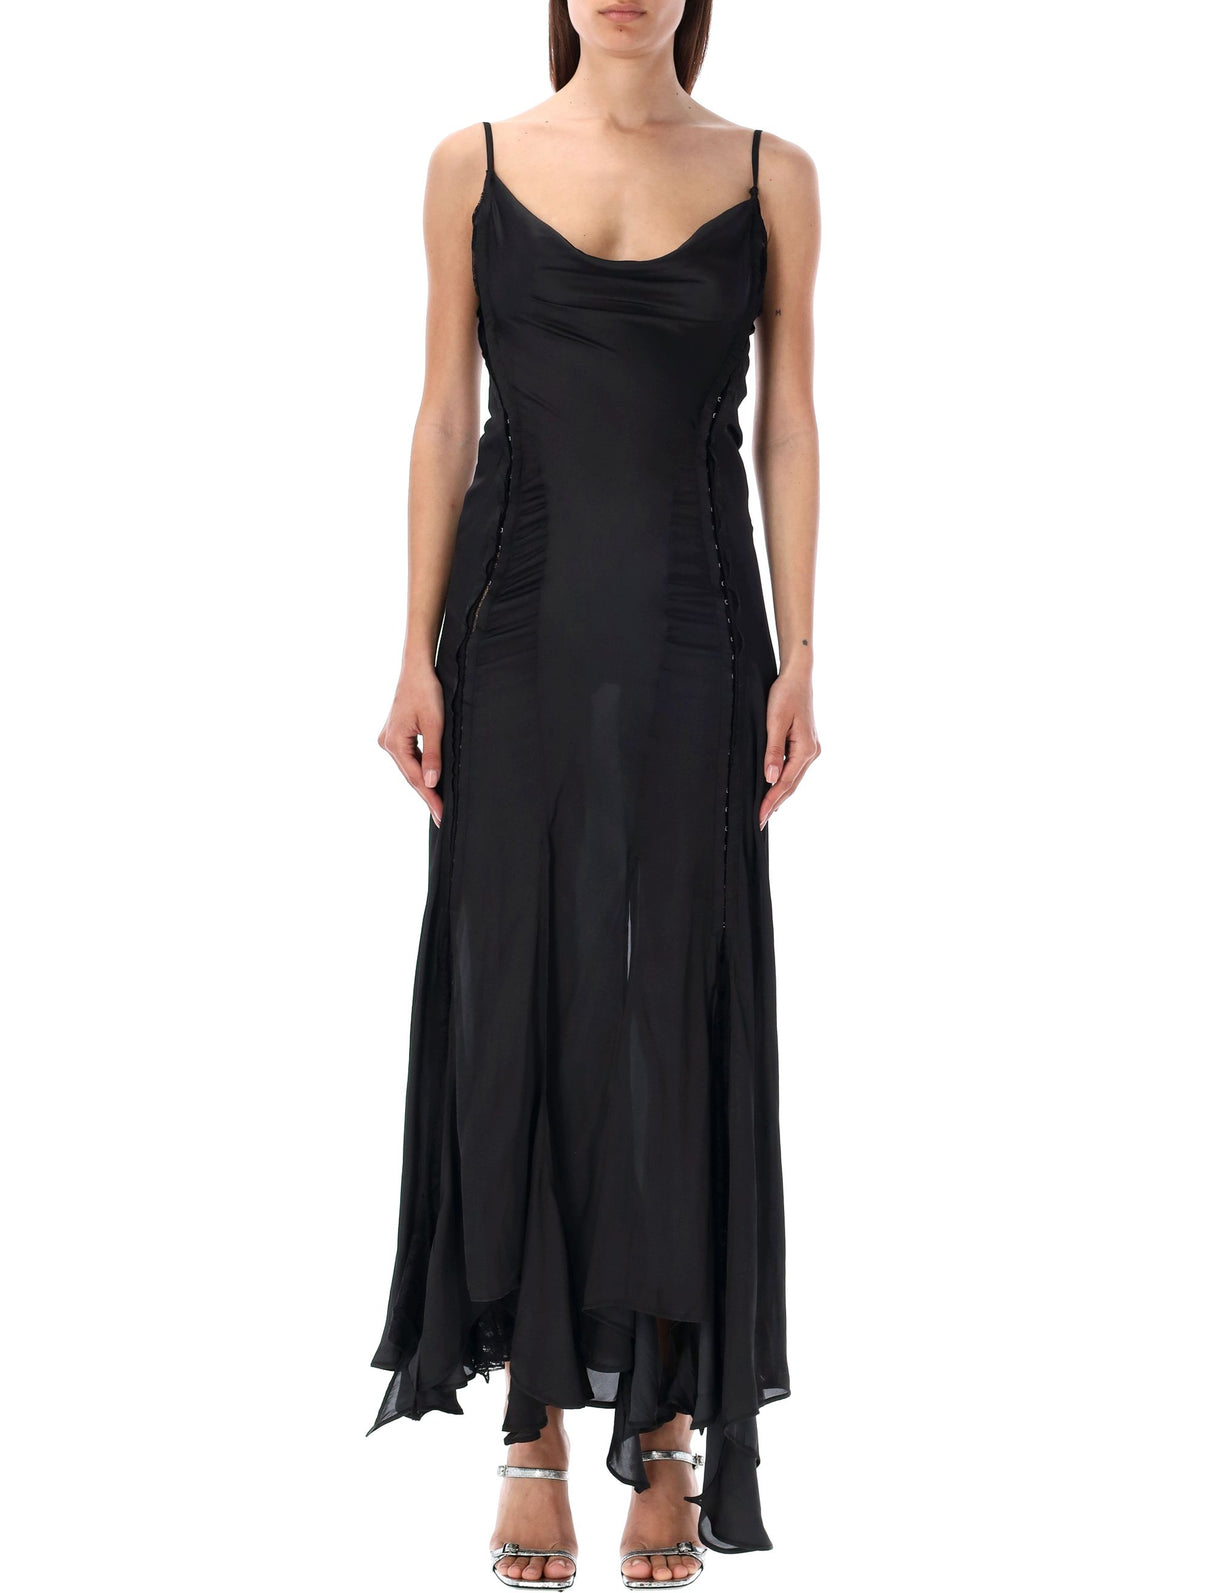 Y/PROJECT Sleek Black Hook-and-Eye Long Dress for Women's SS24 Wardrobe